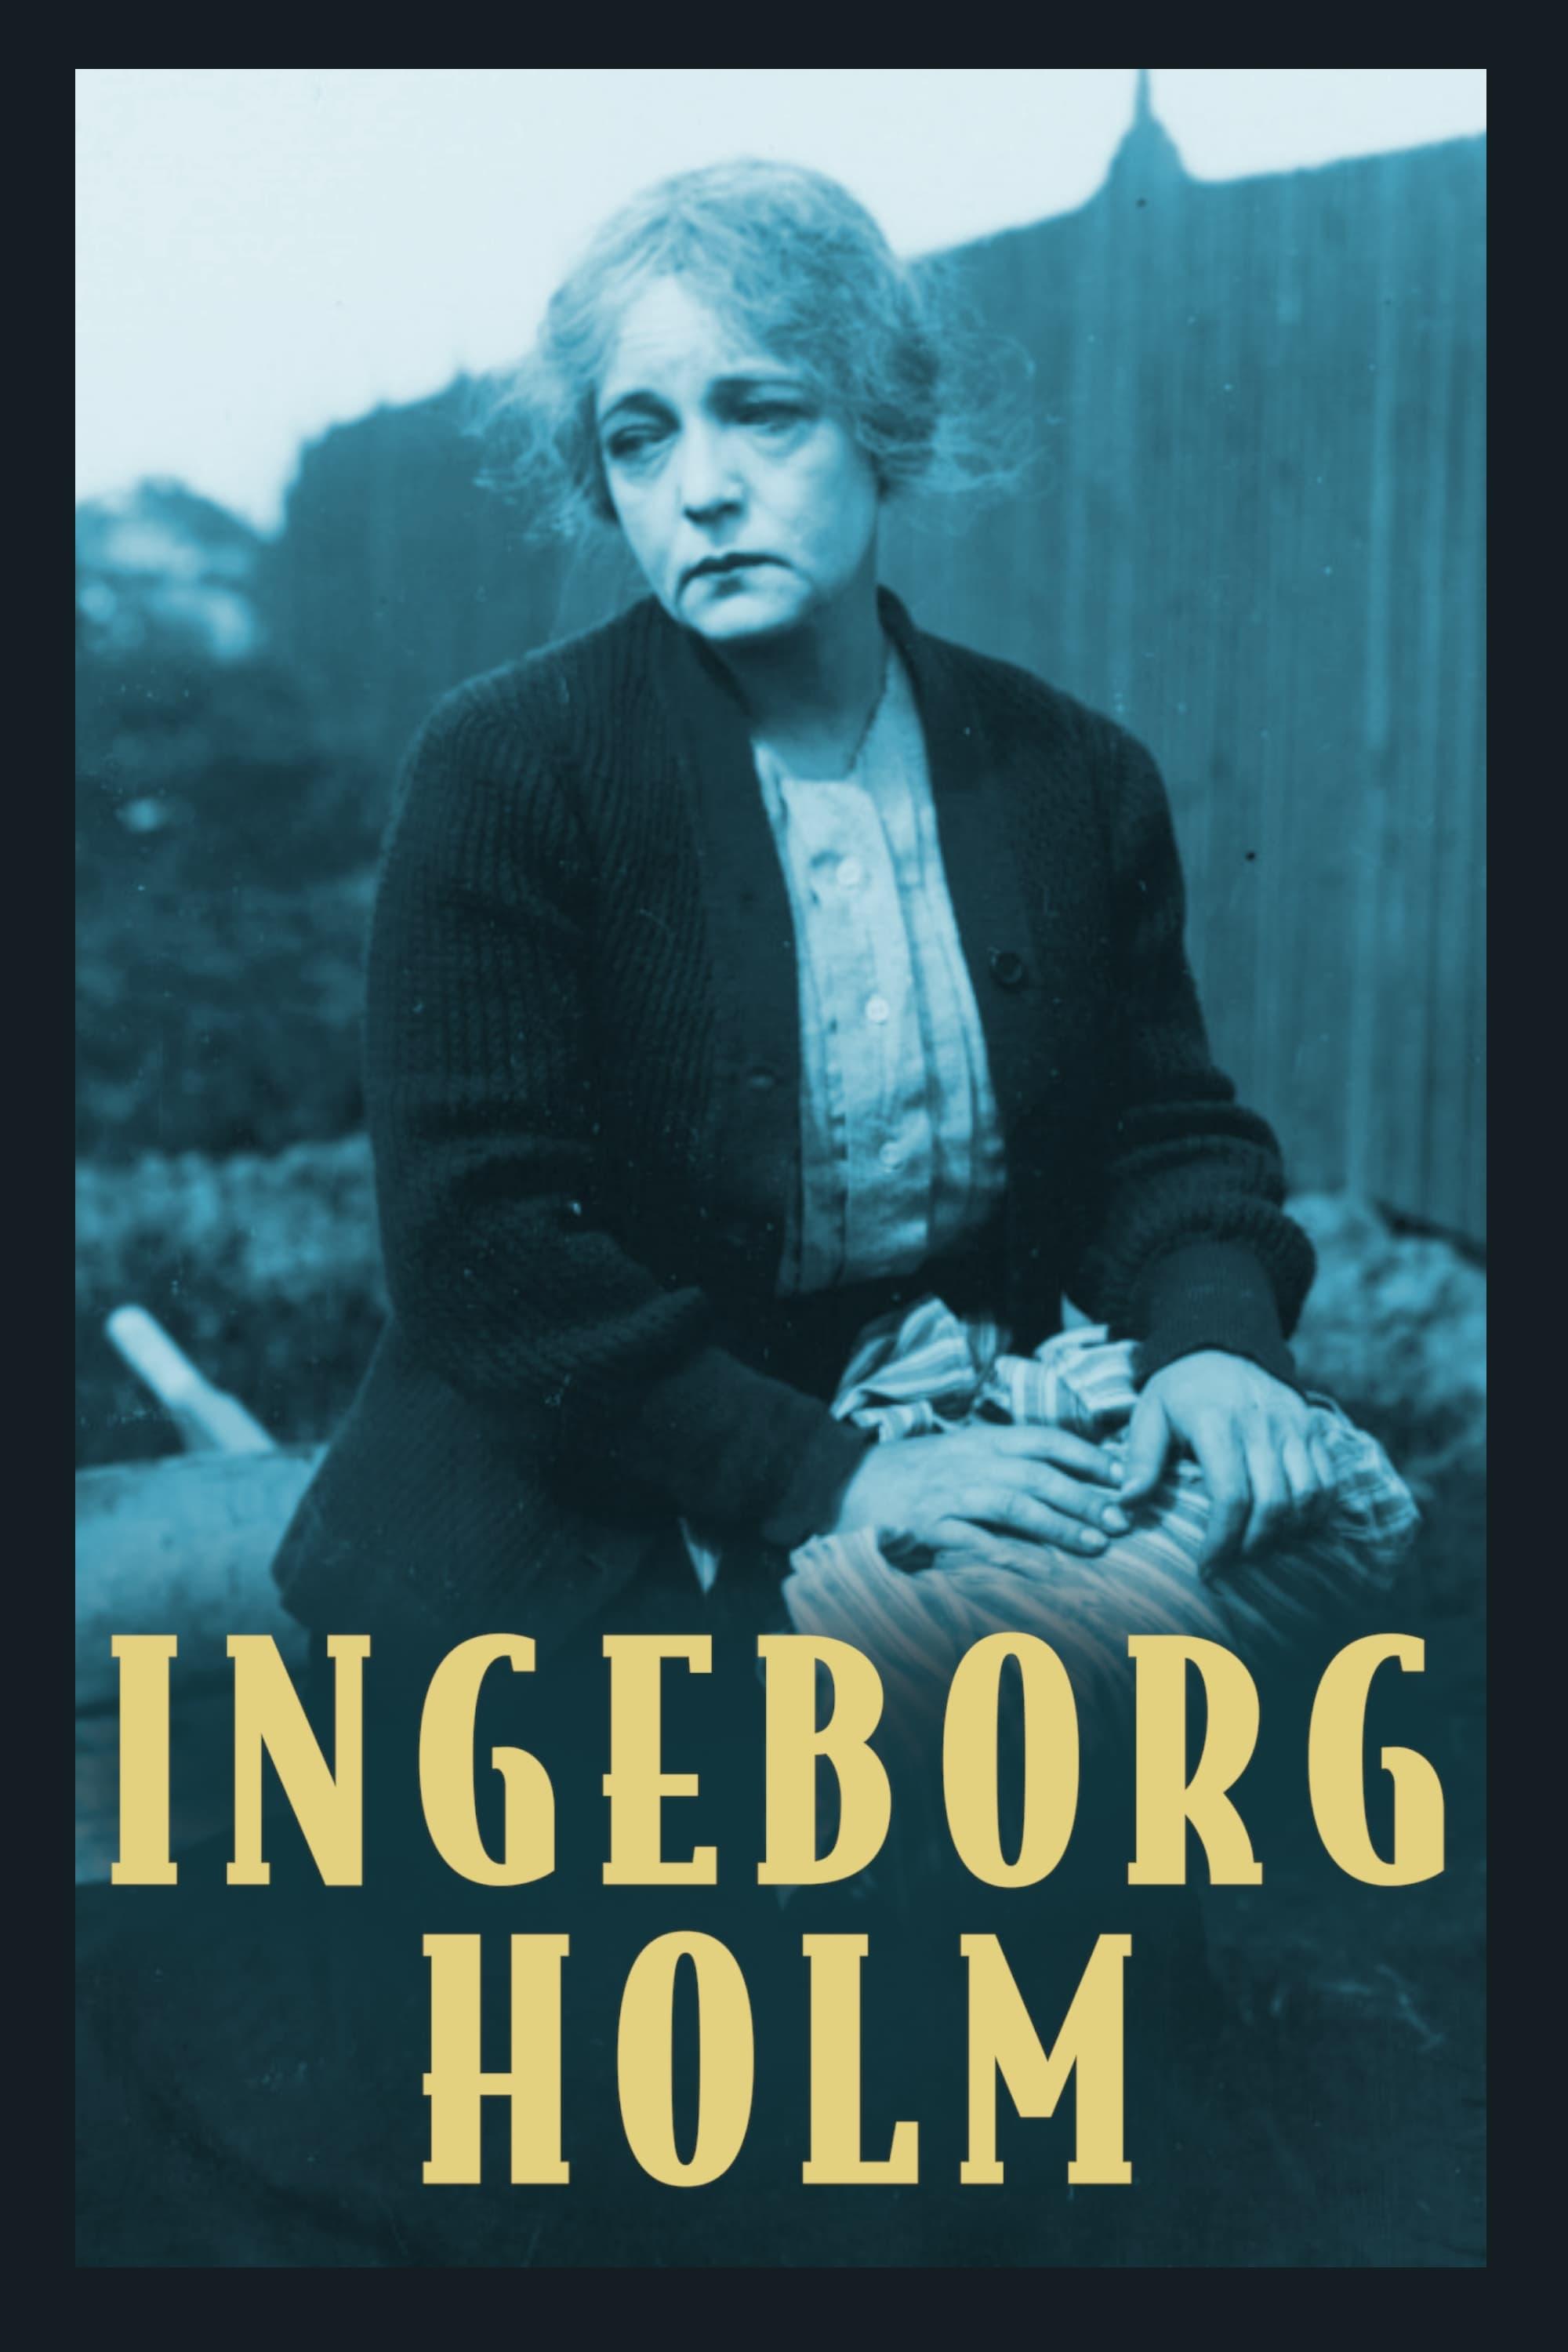 Ingeborg Holm poster